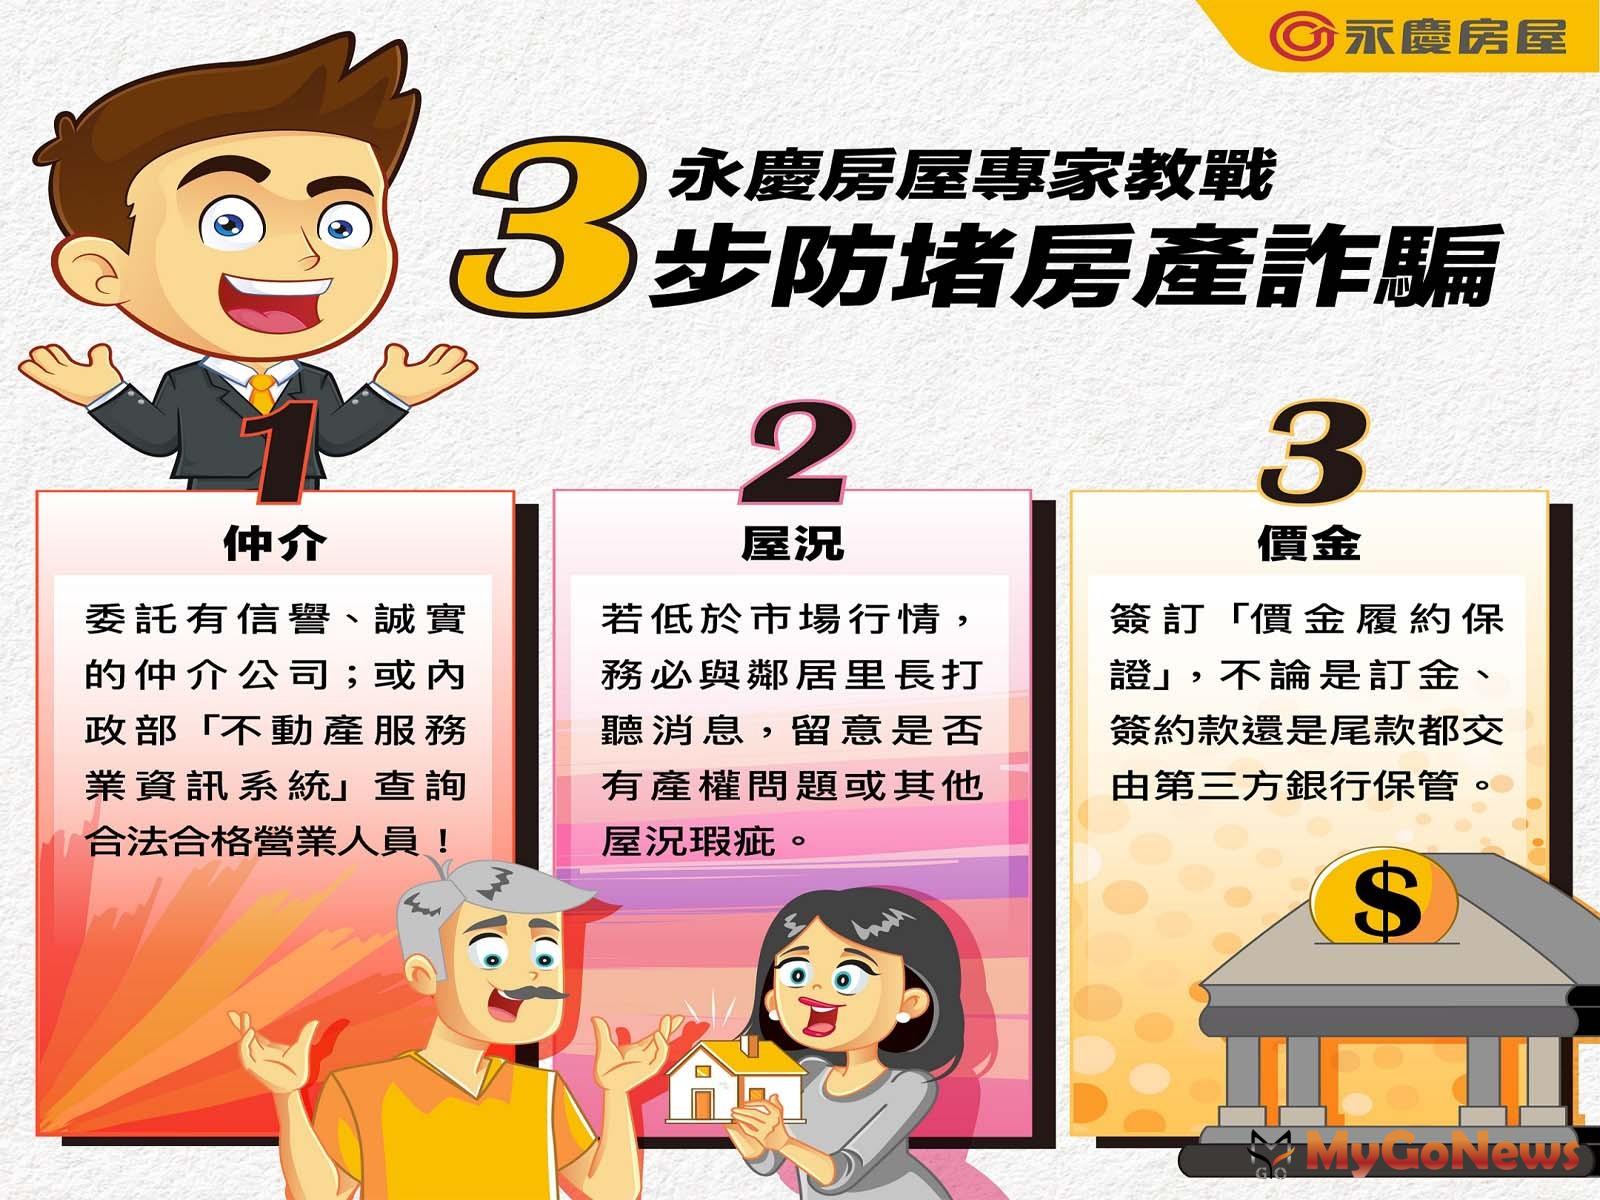 永慶專家教戰「3步防堵房產詐騙」